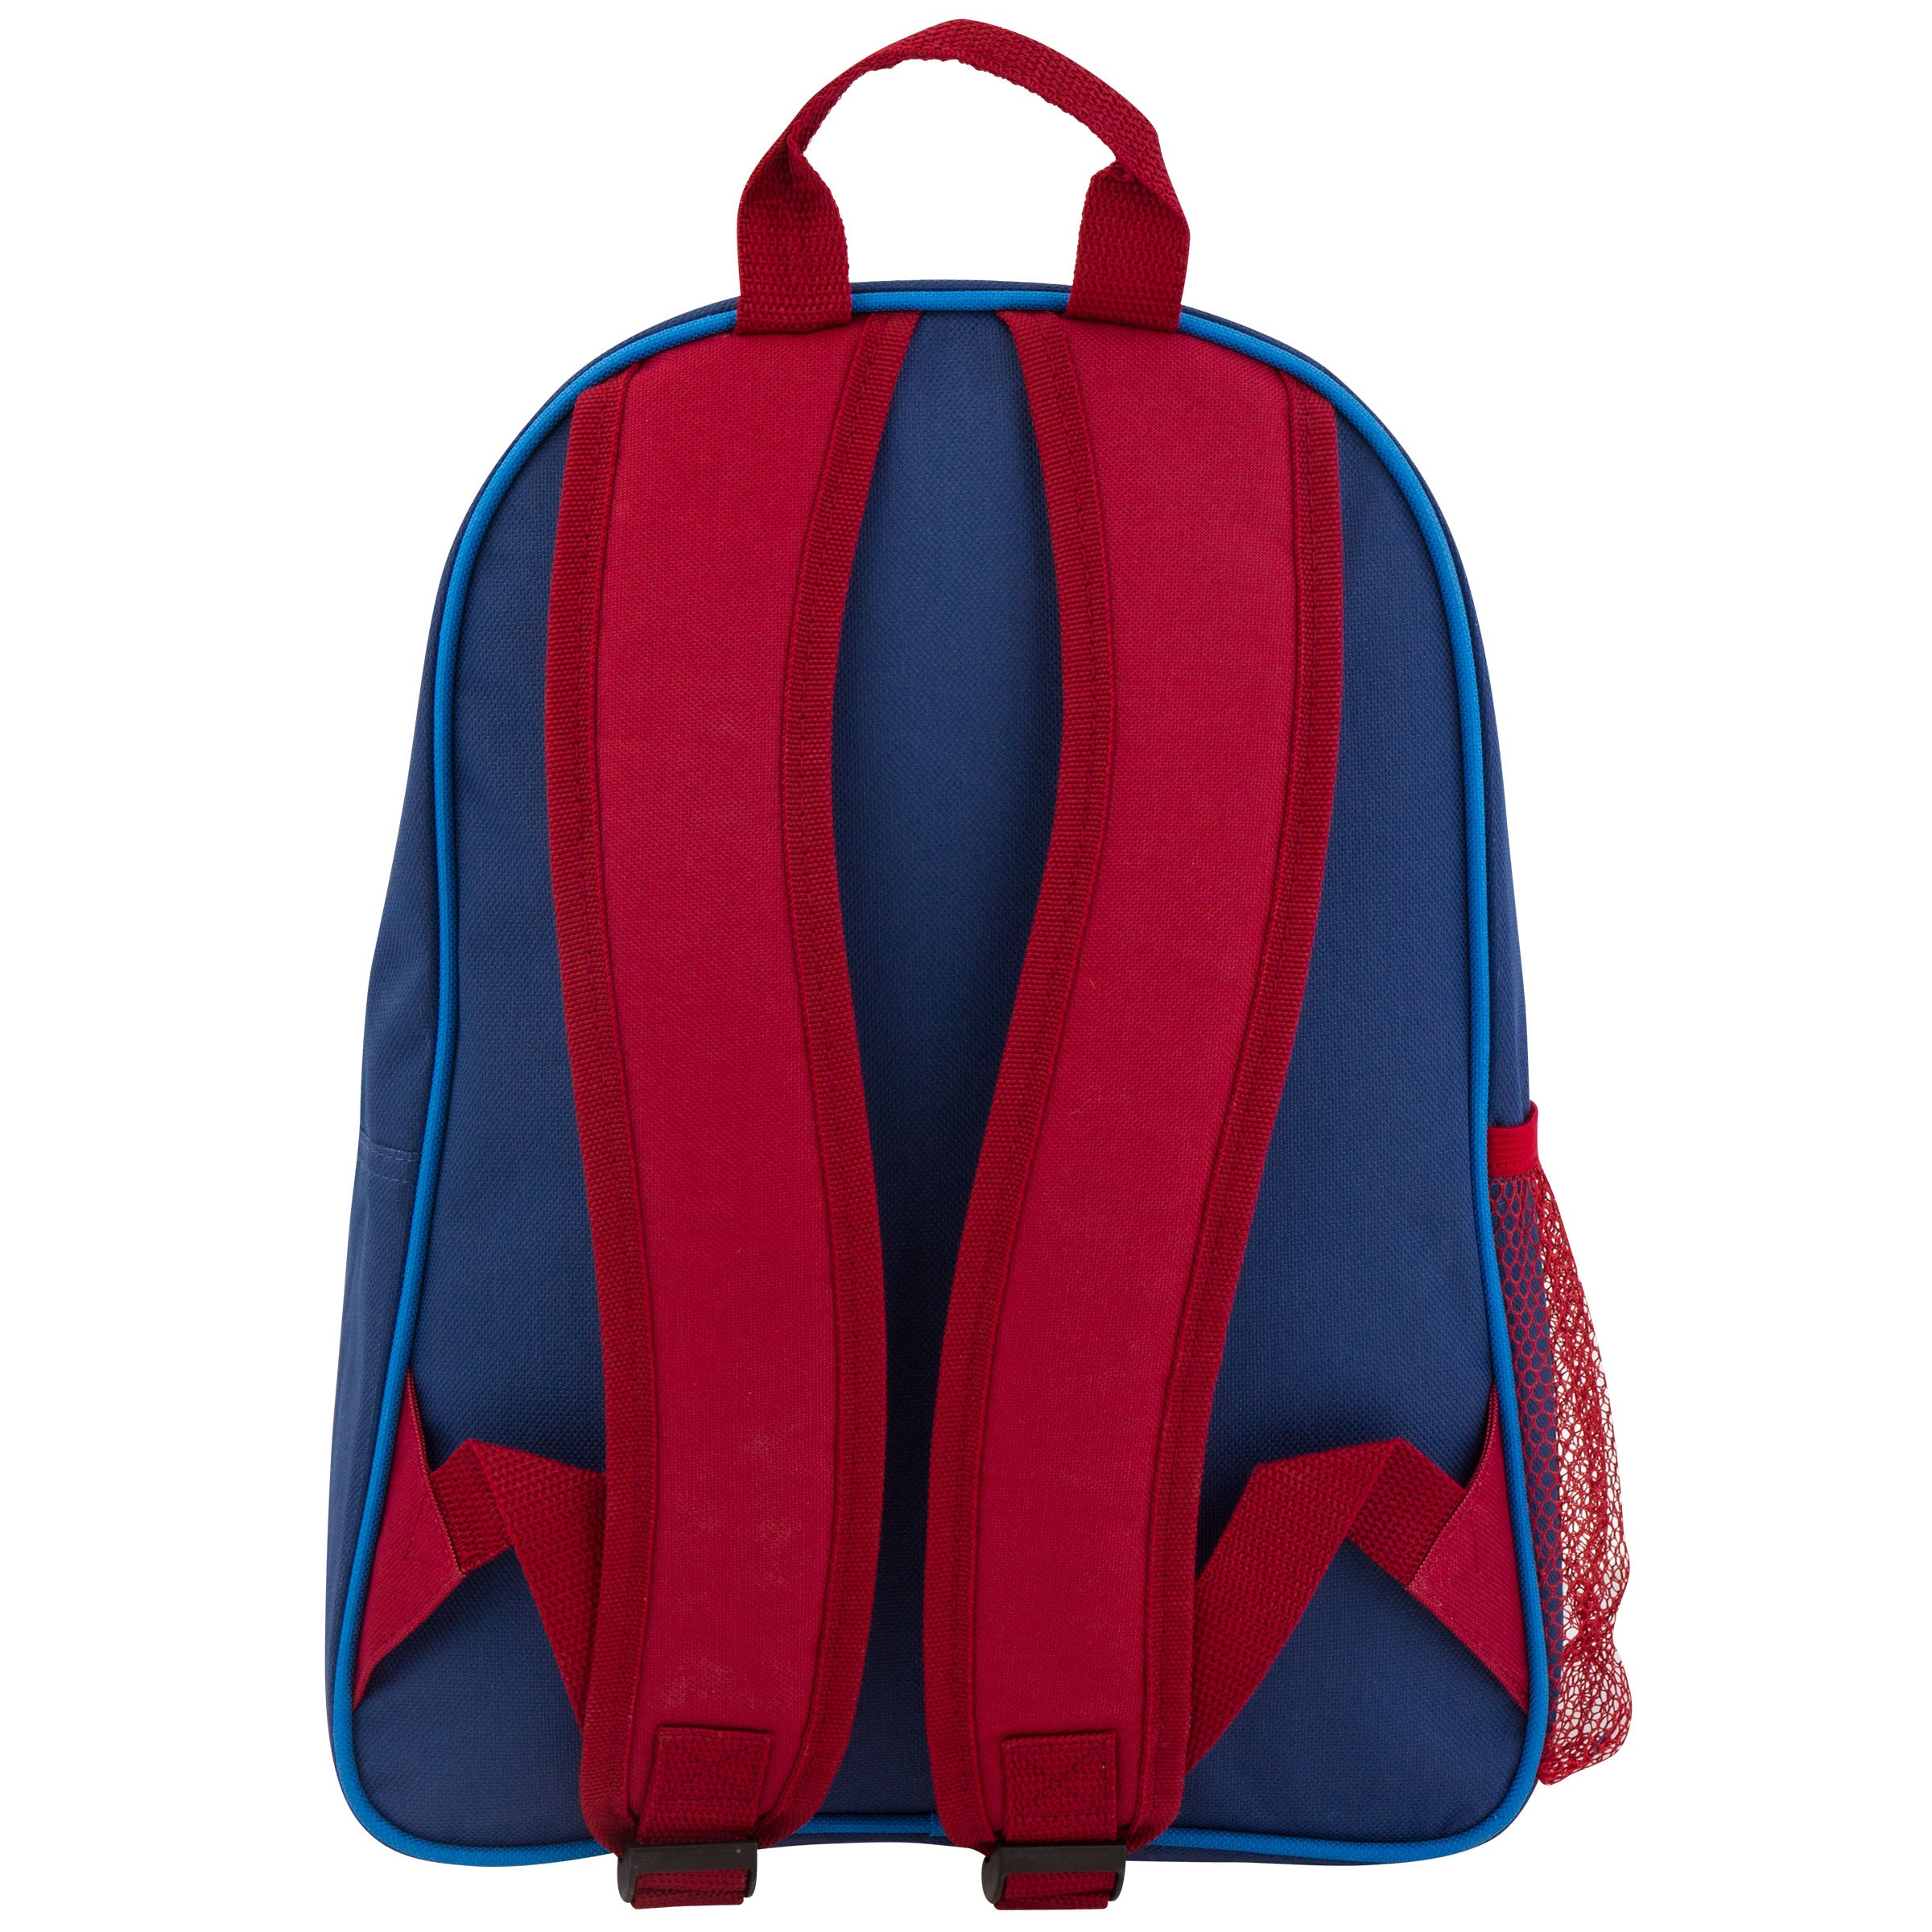 Sidekicks Backpack - Sports